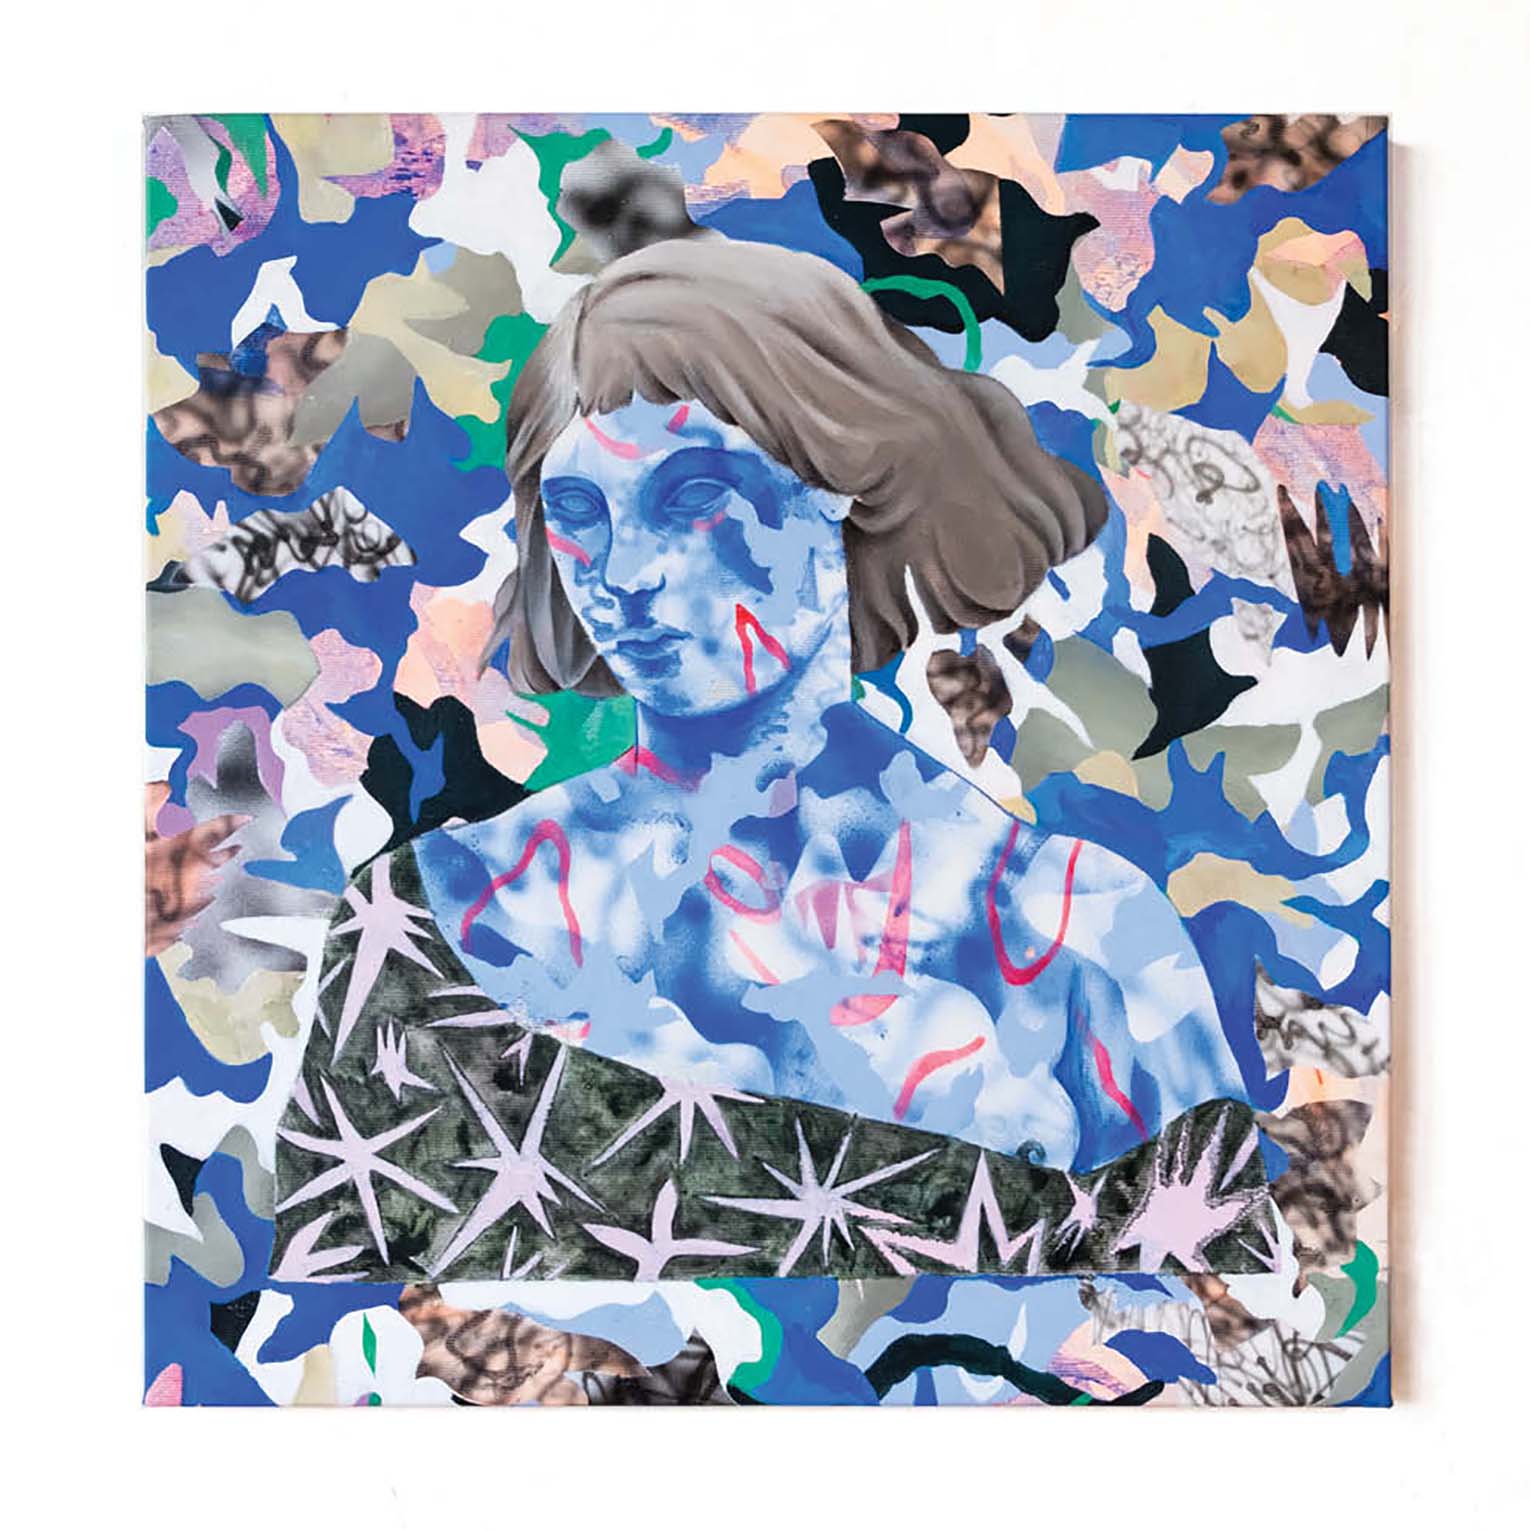 Dreamer in blue - Peinture acrylique sur toile - 43x45 cm - 2019